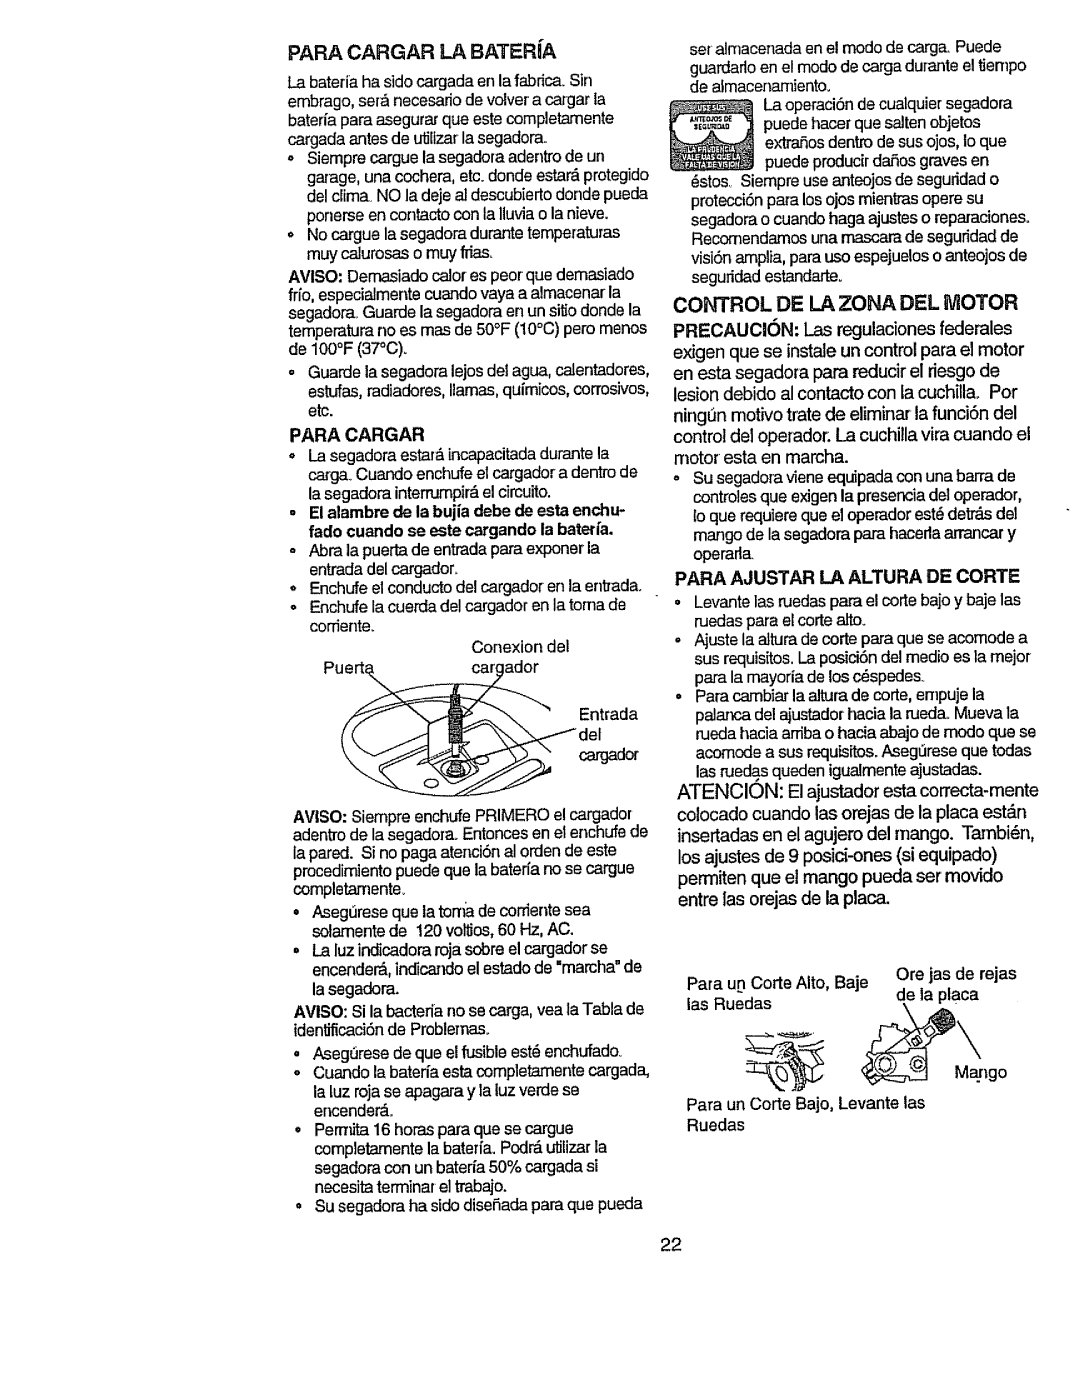 Craftsman 917.386411 manual Para Cargar La Bateria, Control De La Zona Del Motor, ATENCION: El ajustadorestacorrecta-mente 